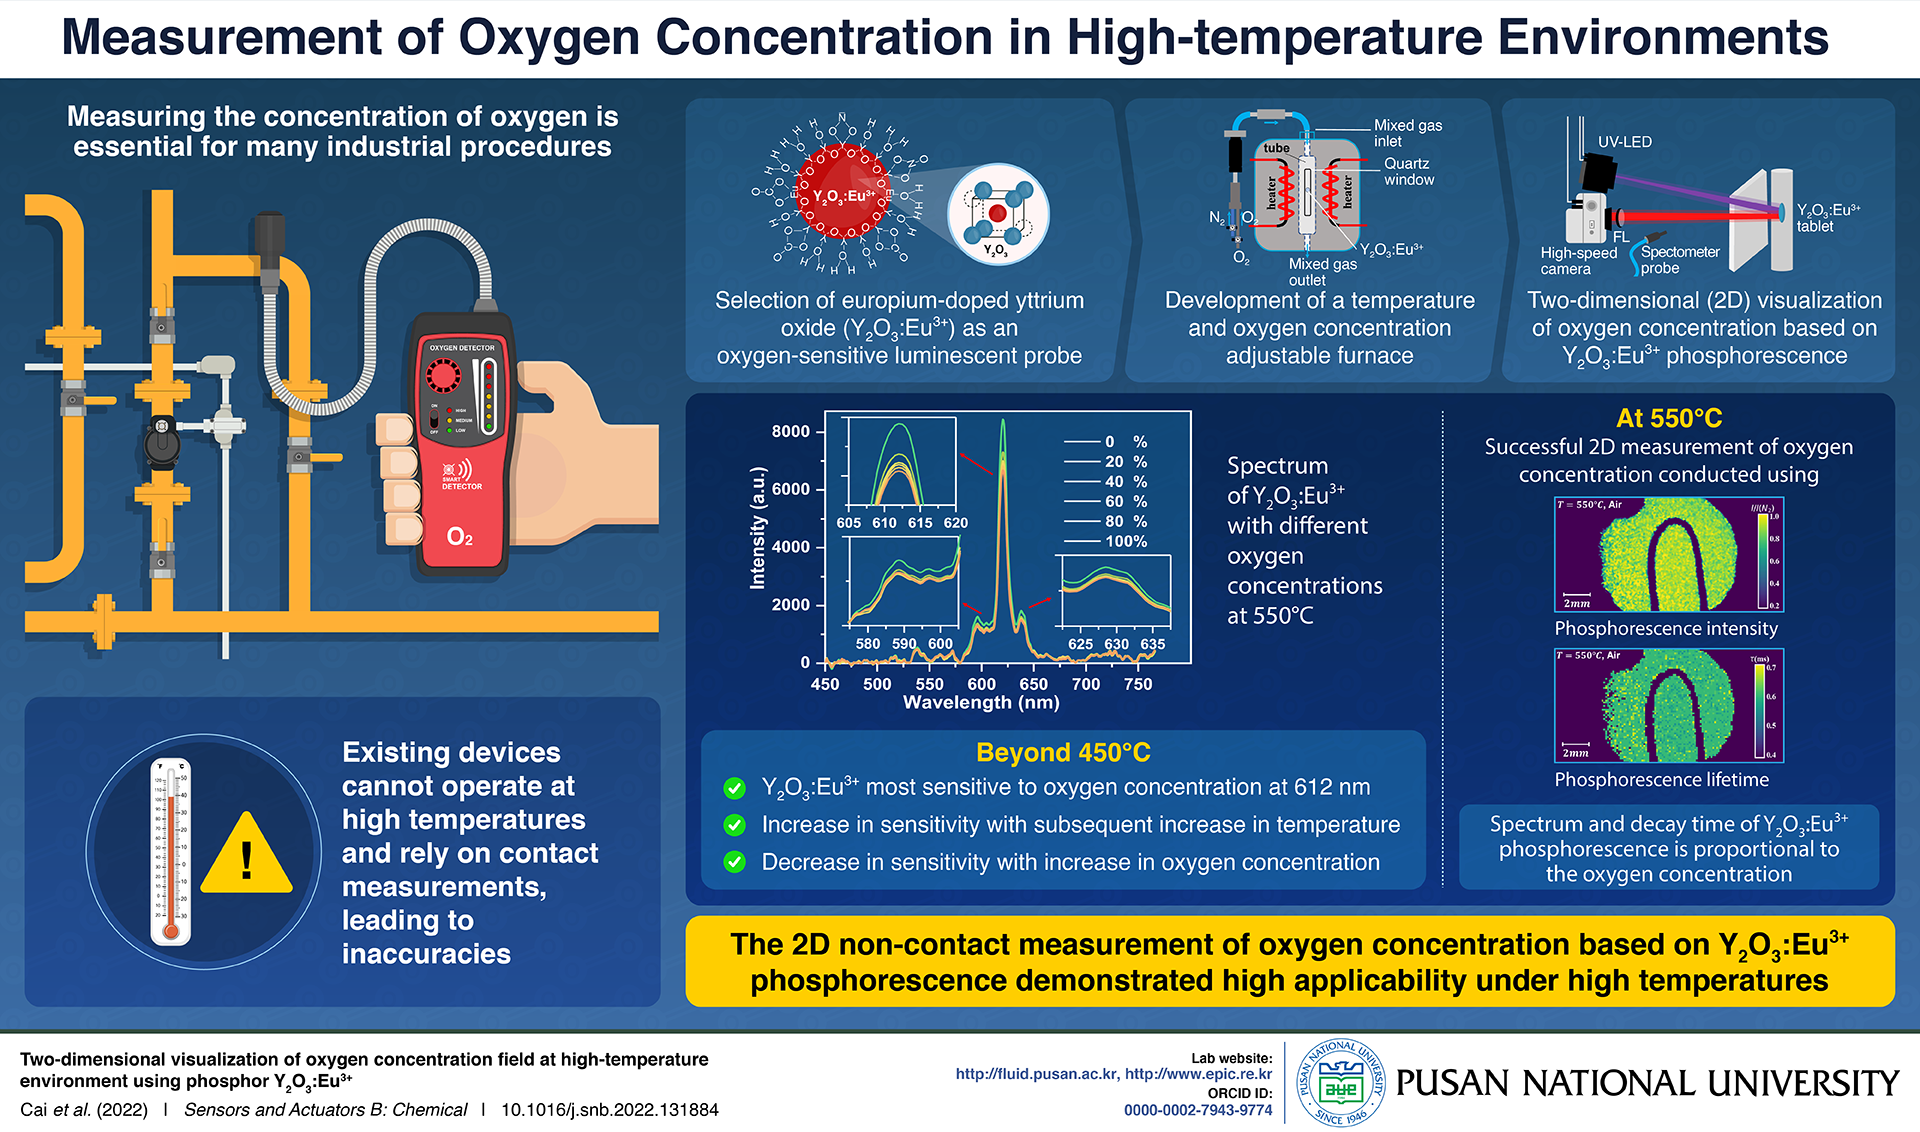 Novel Non-contact Oxygen Concentration Measurement Technique Developed by Pusan National University Researchers